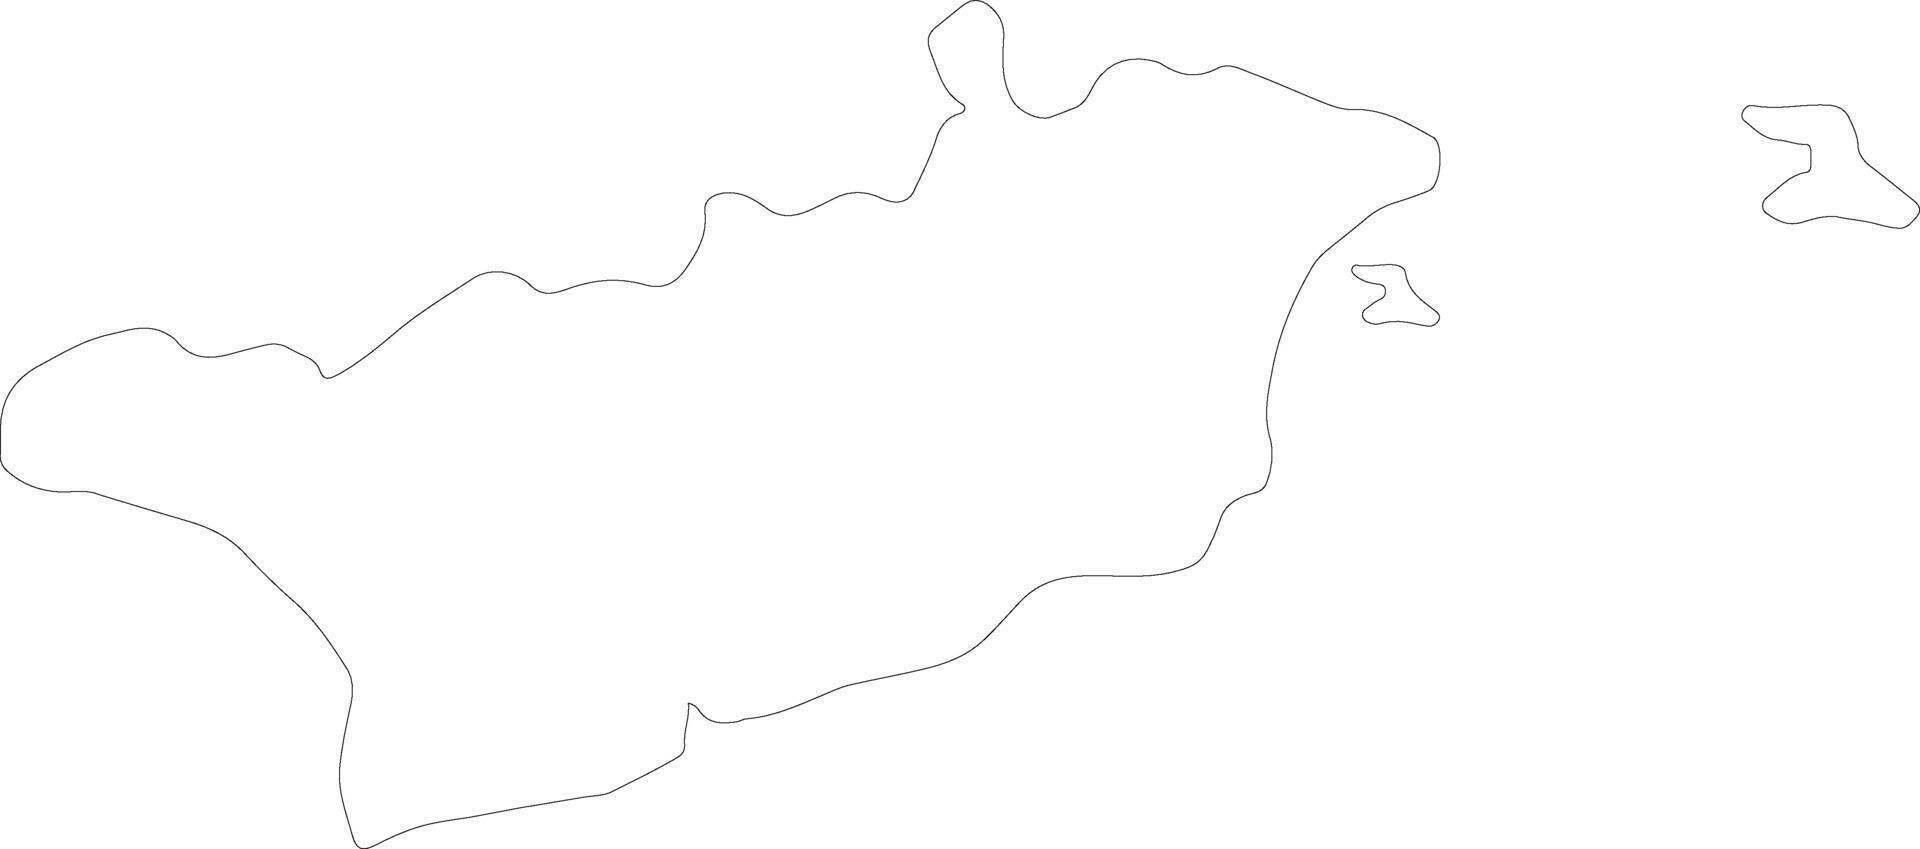 larnaca cypern översikt Karta vektor